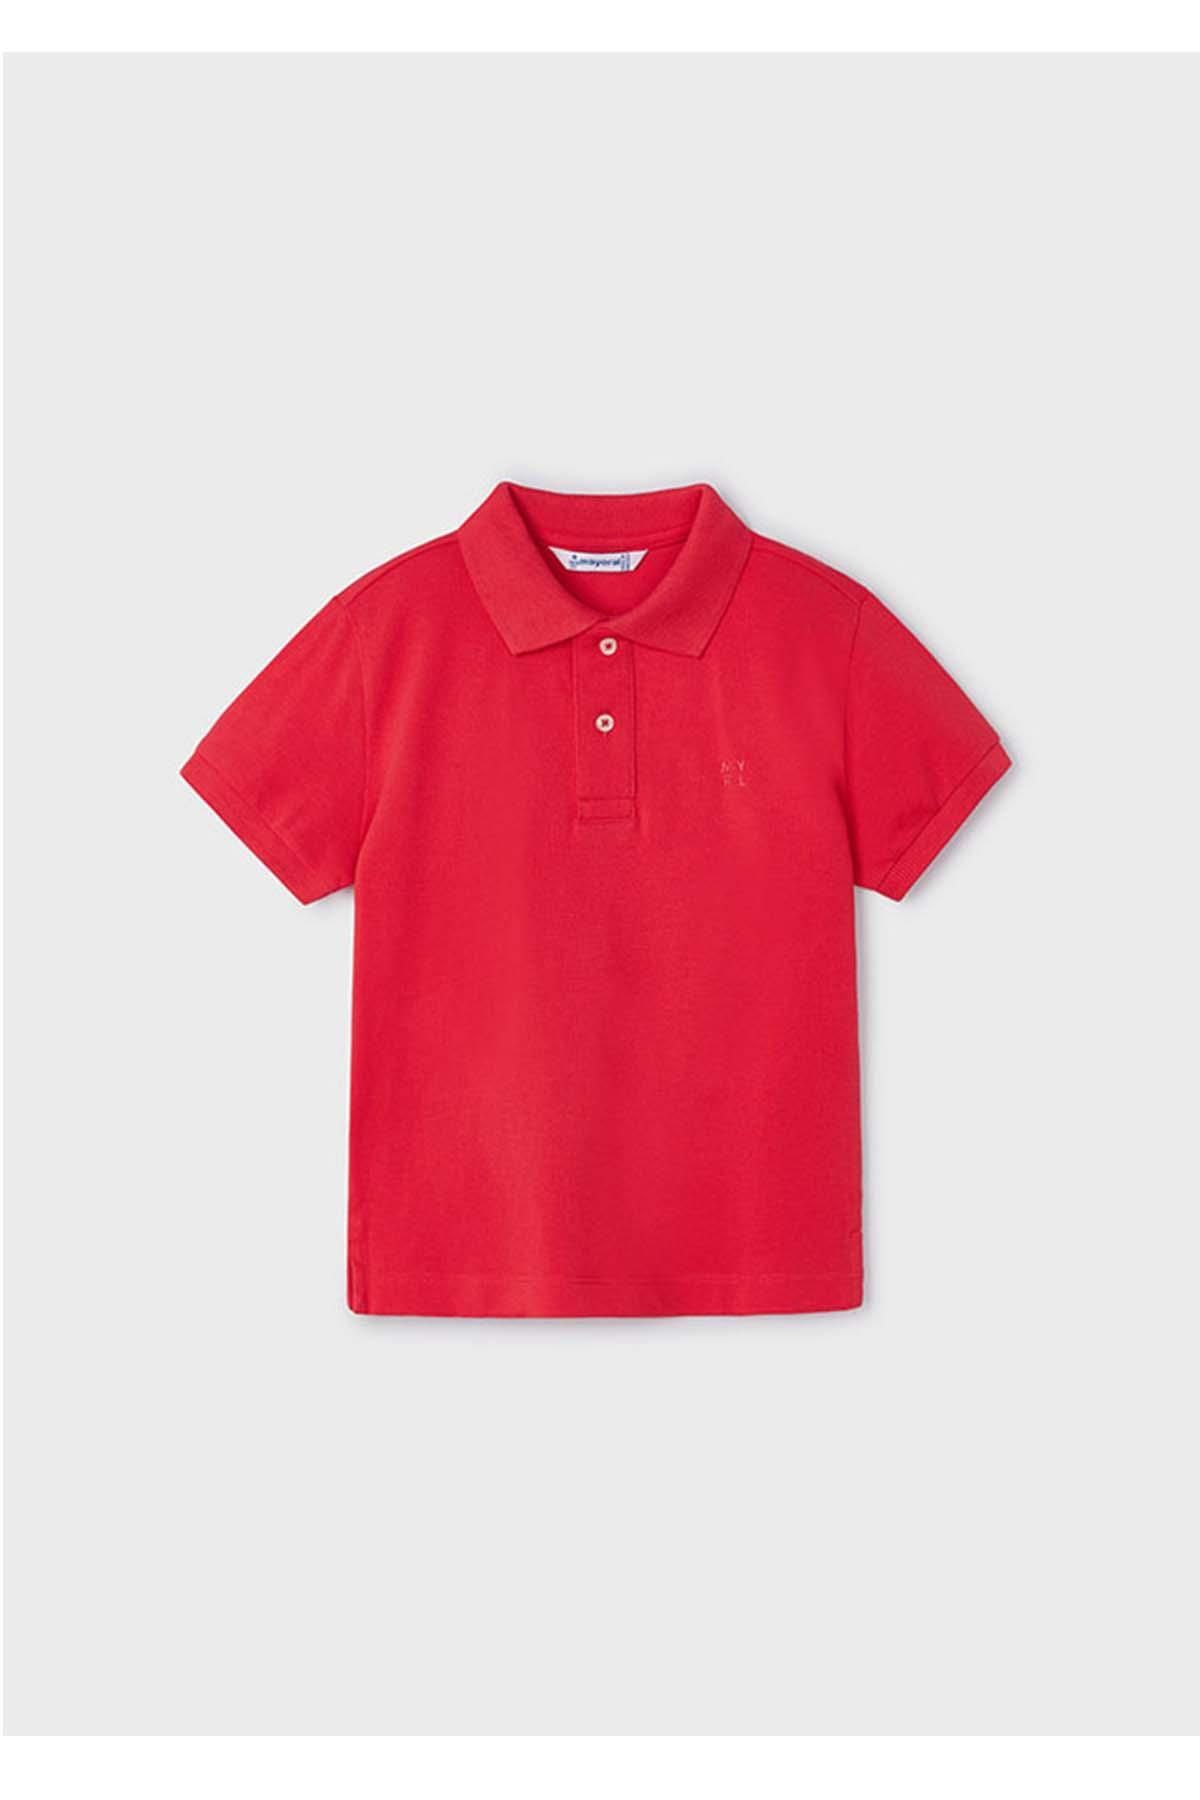 Mayoral Yazlık Erkek Kısa Kol Basic T-shirt - Kırmızı